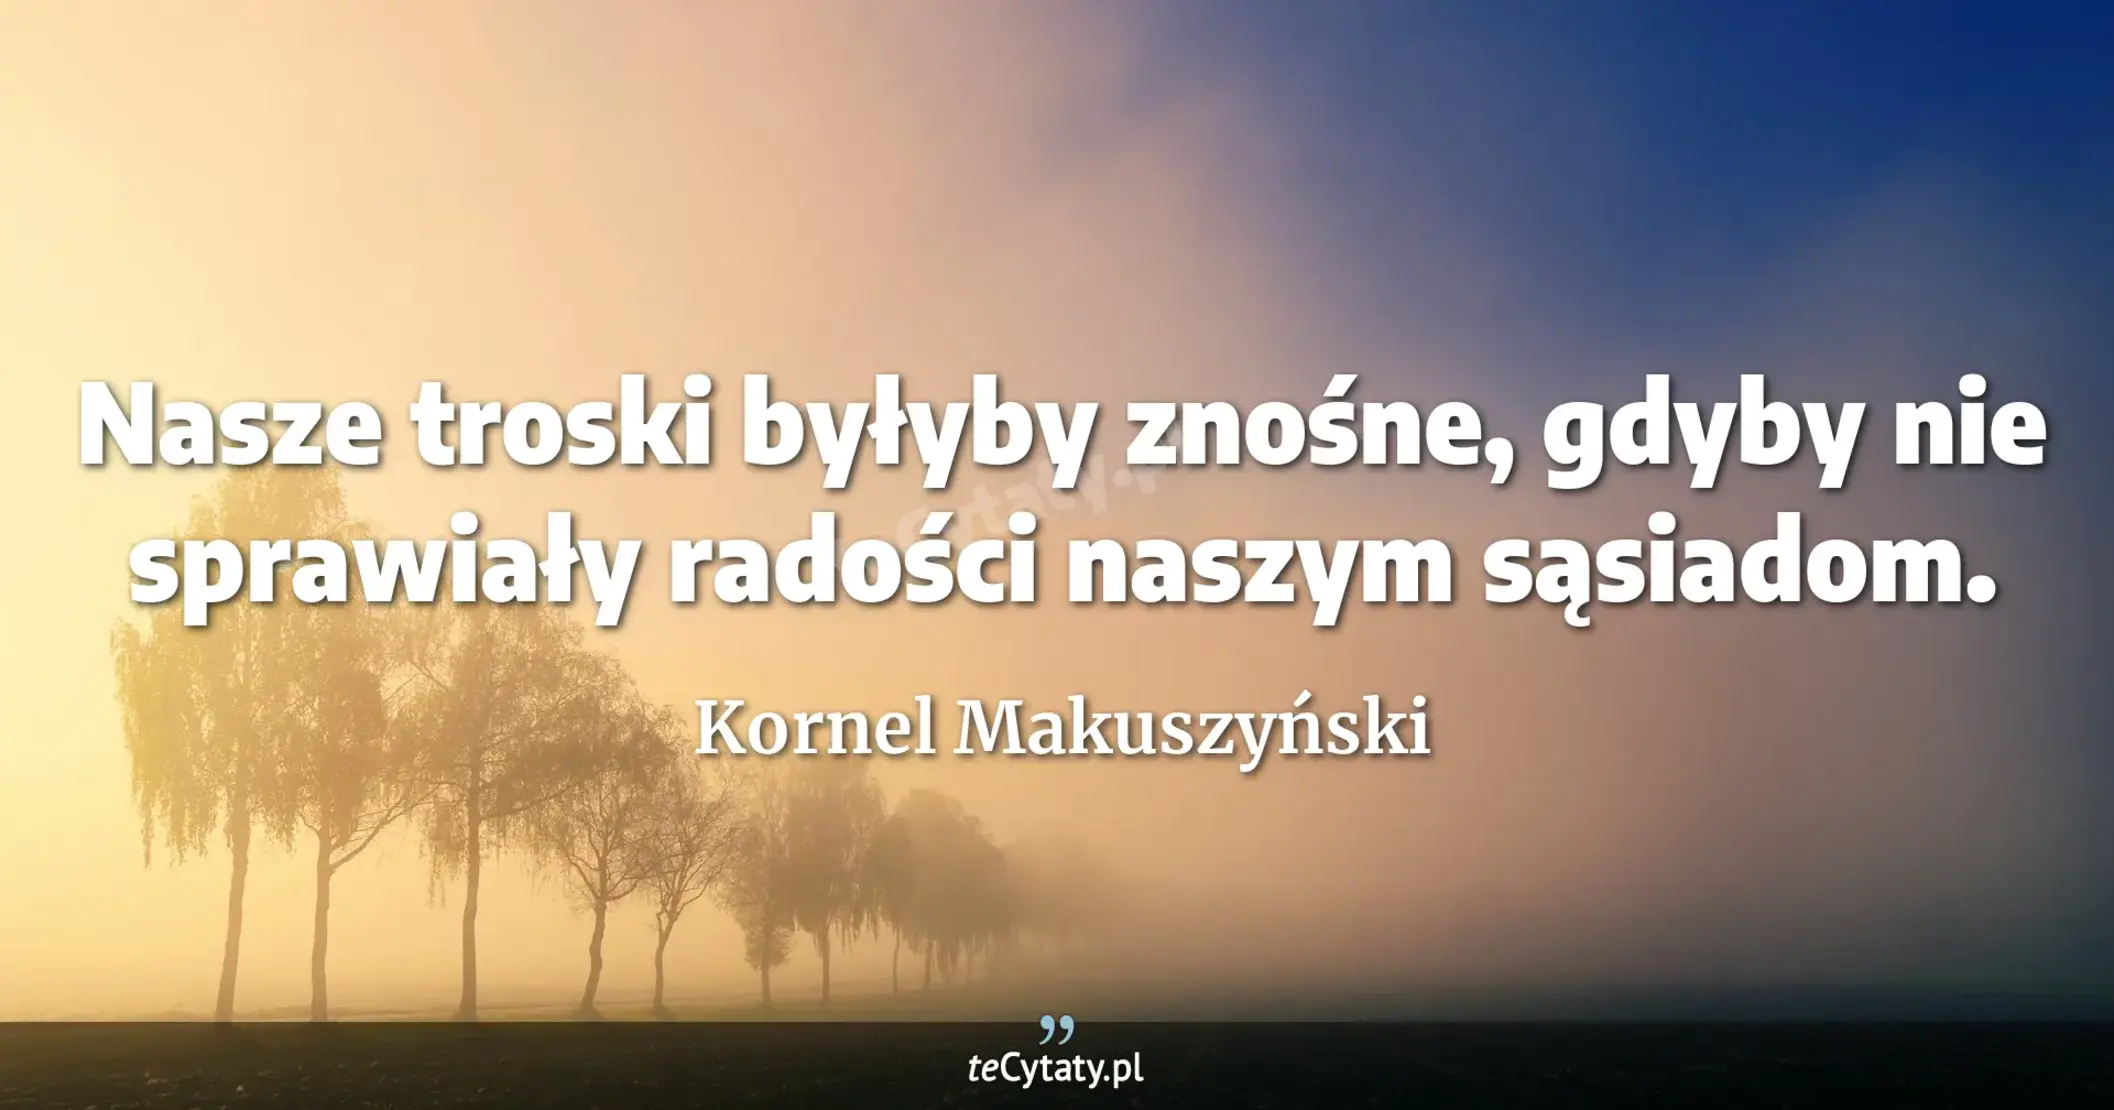 Nasze troski byłyby znośne, gdyby nie sprawiały radości naszym sąsiadom. - Kornel Makuszyński